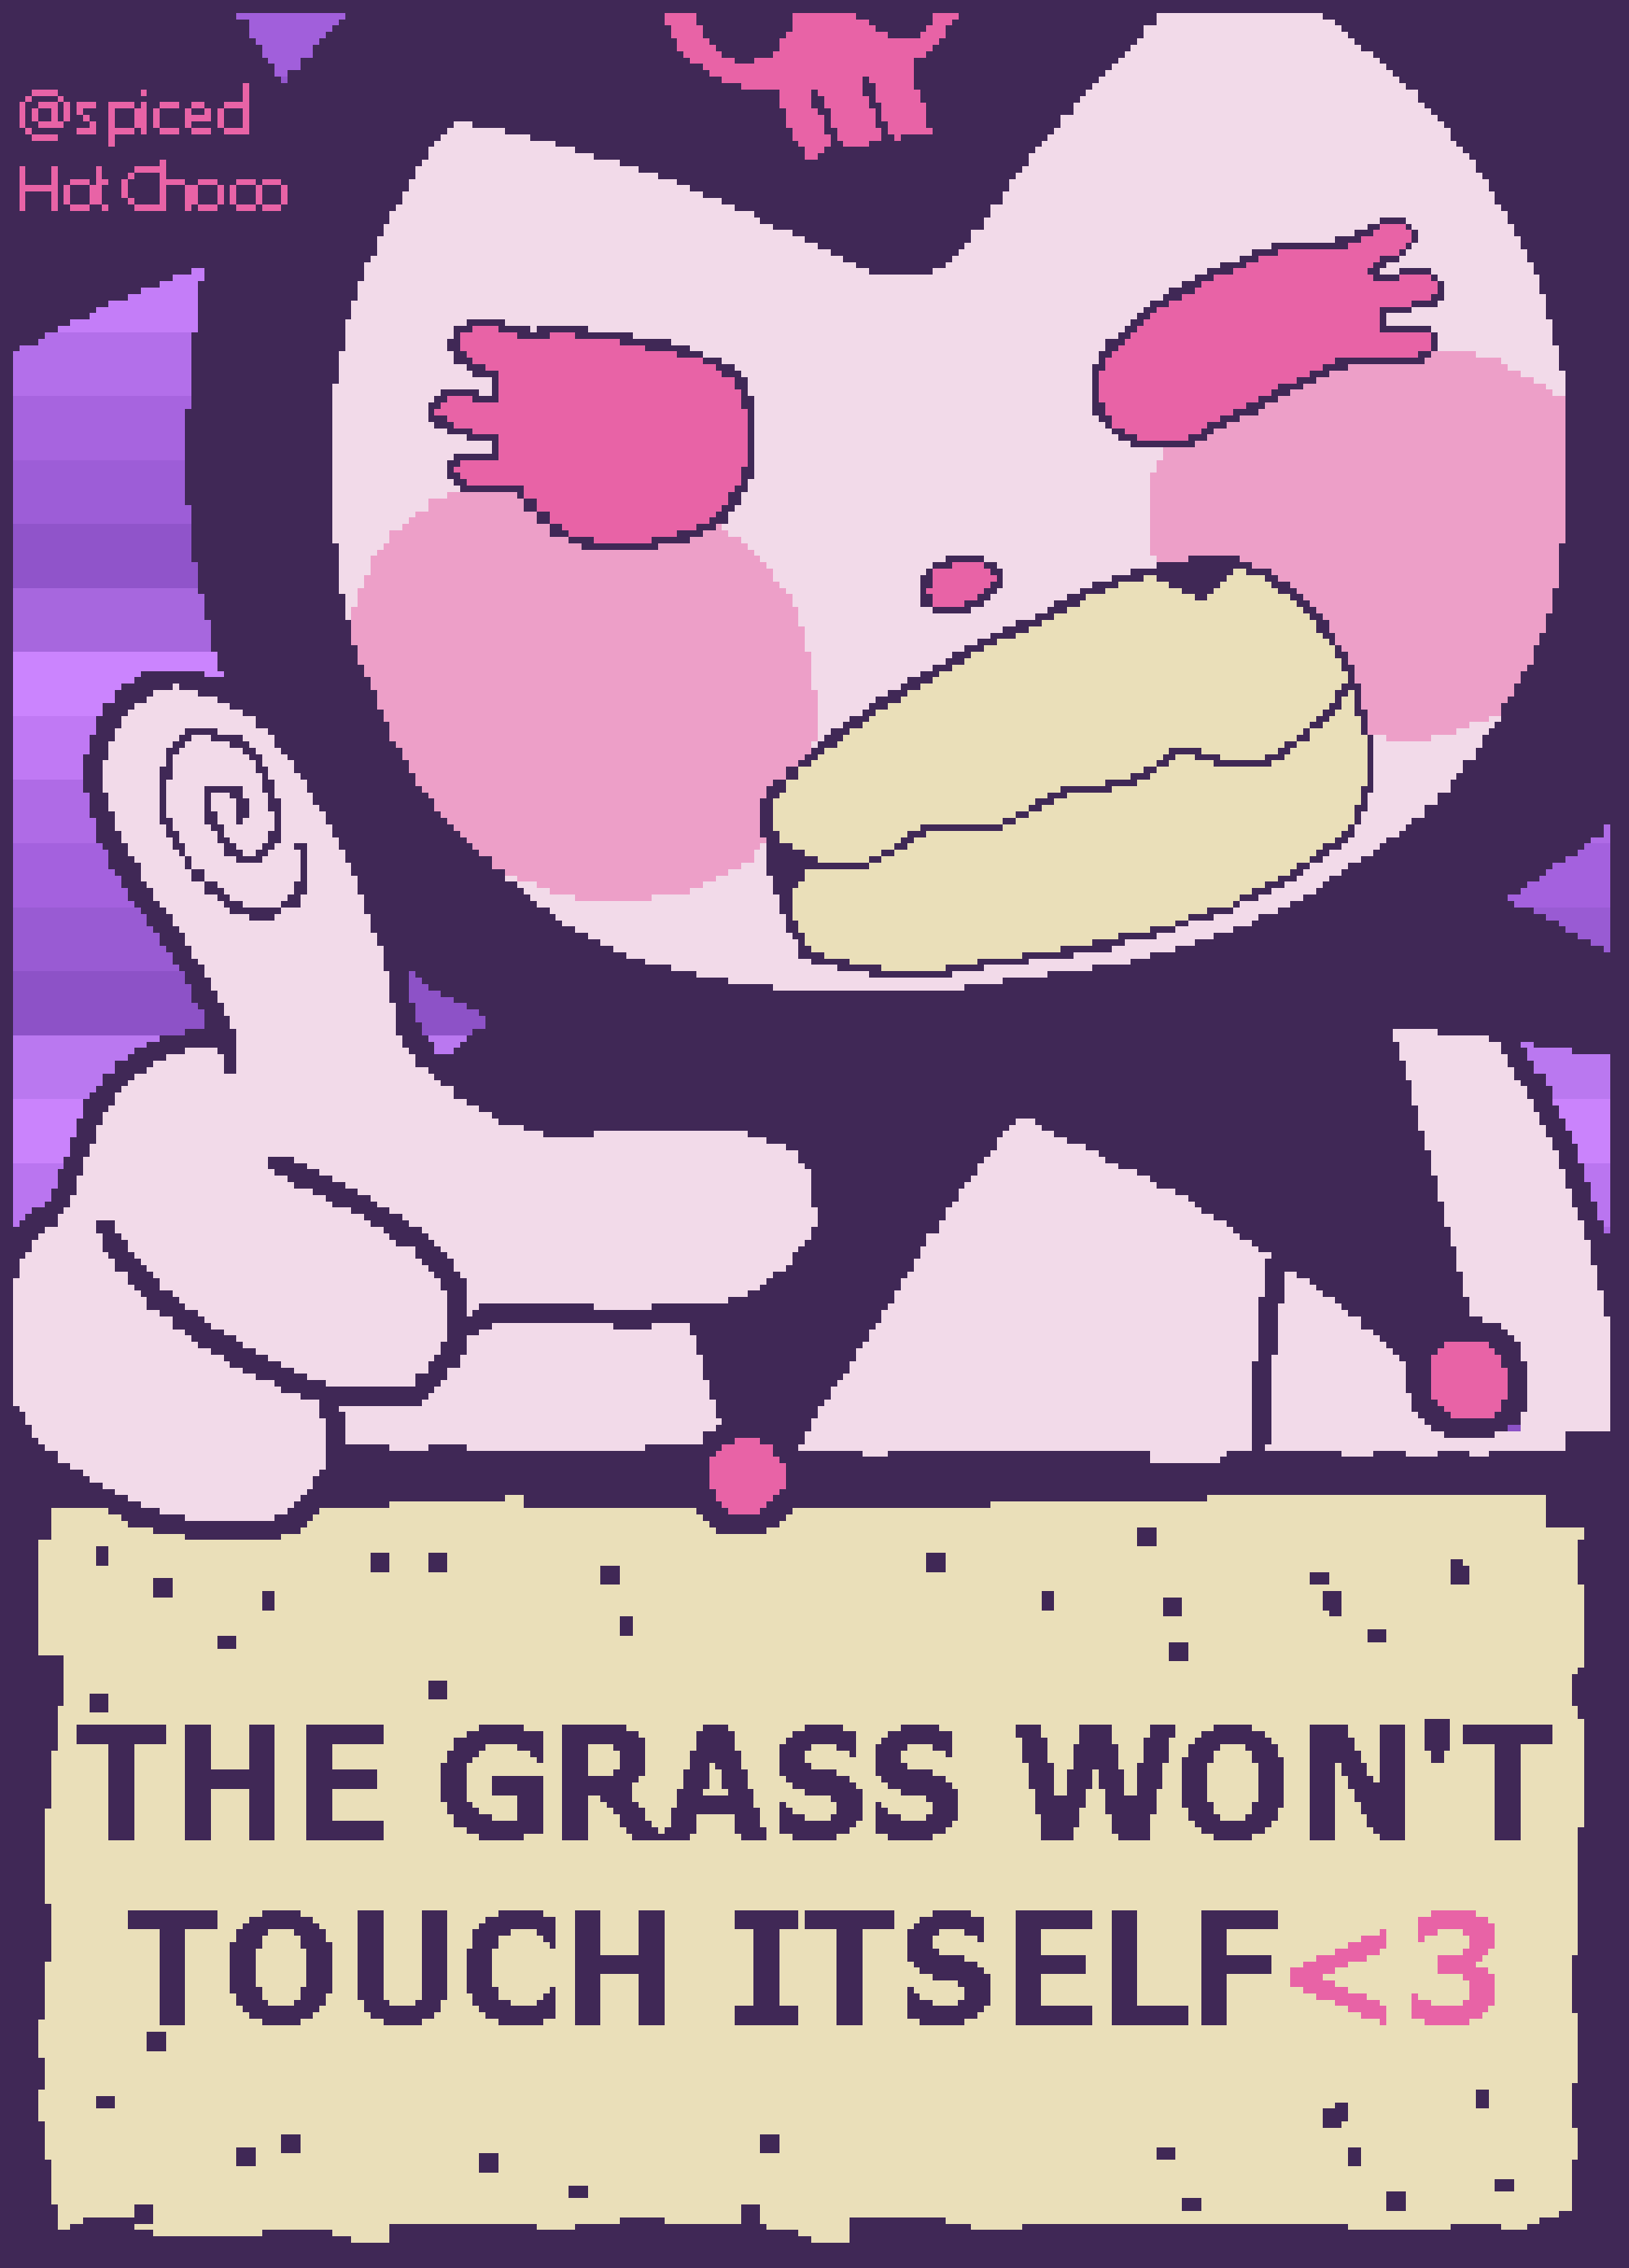 Touch Grass Meme Sticker | Poster